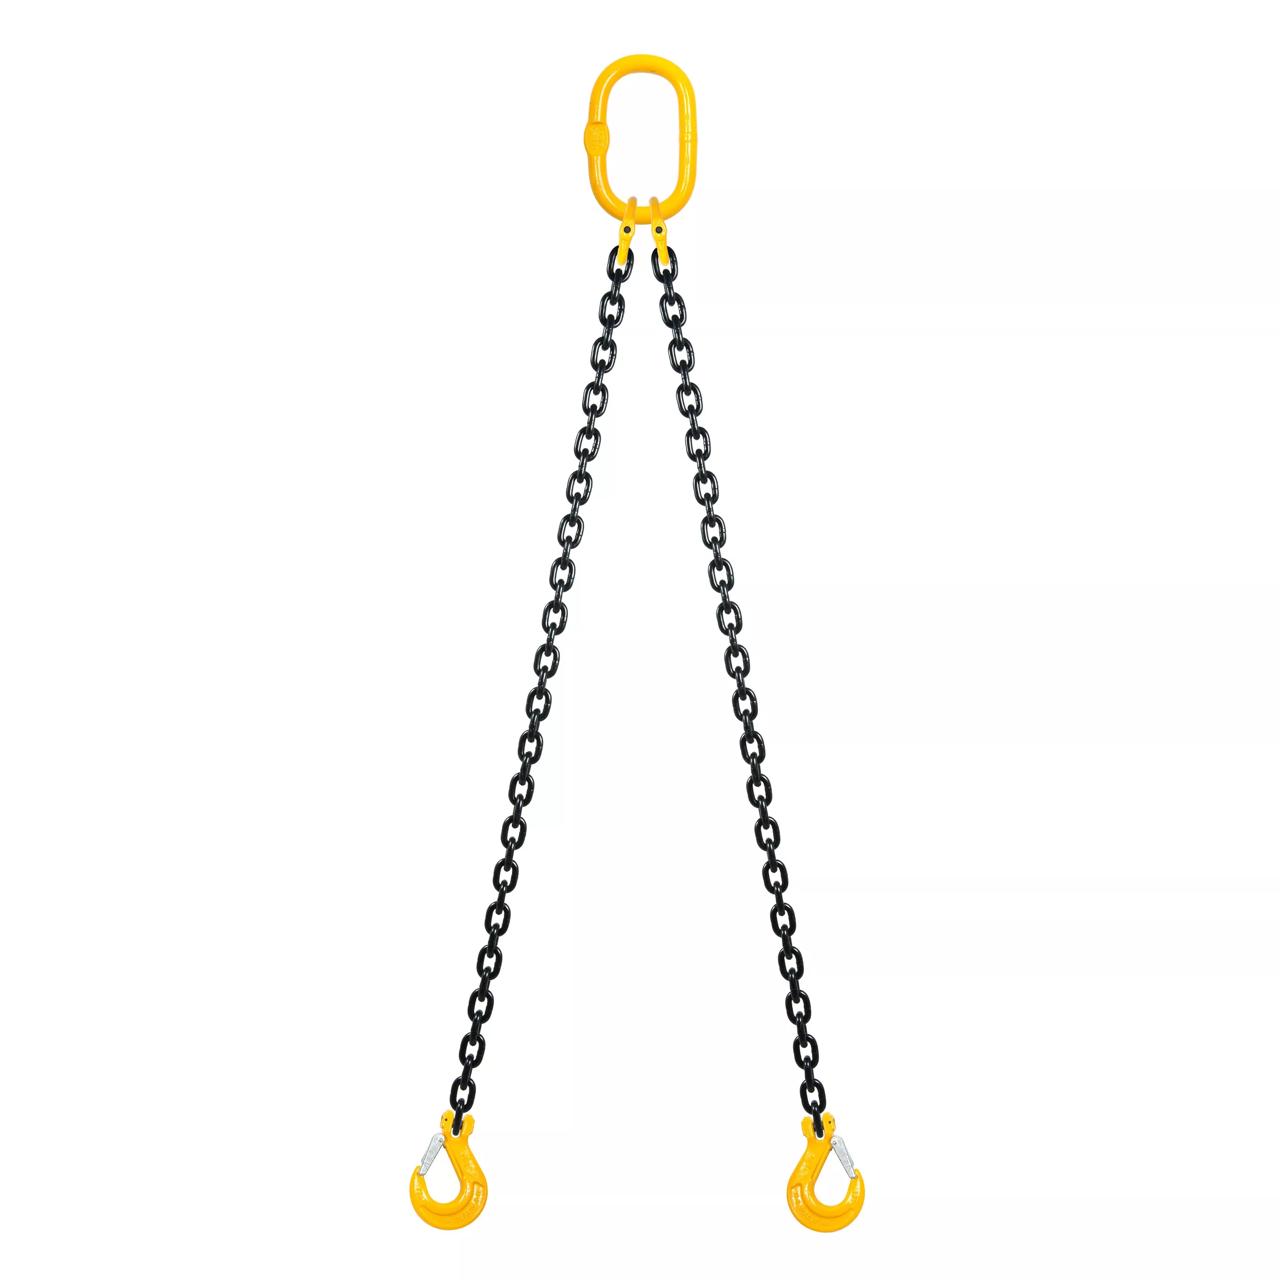 Chain sling 2-part, Grade 80, 6mm, Length 2m, Sling hooks